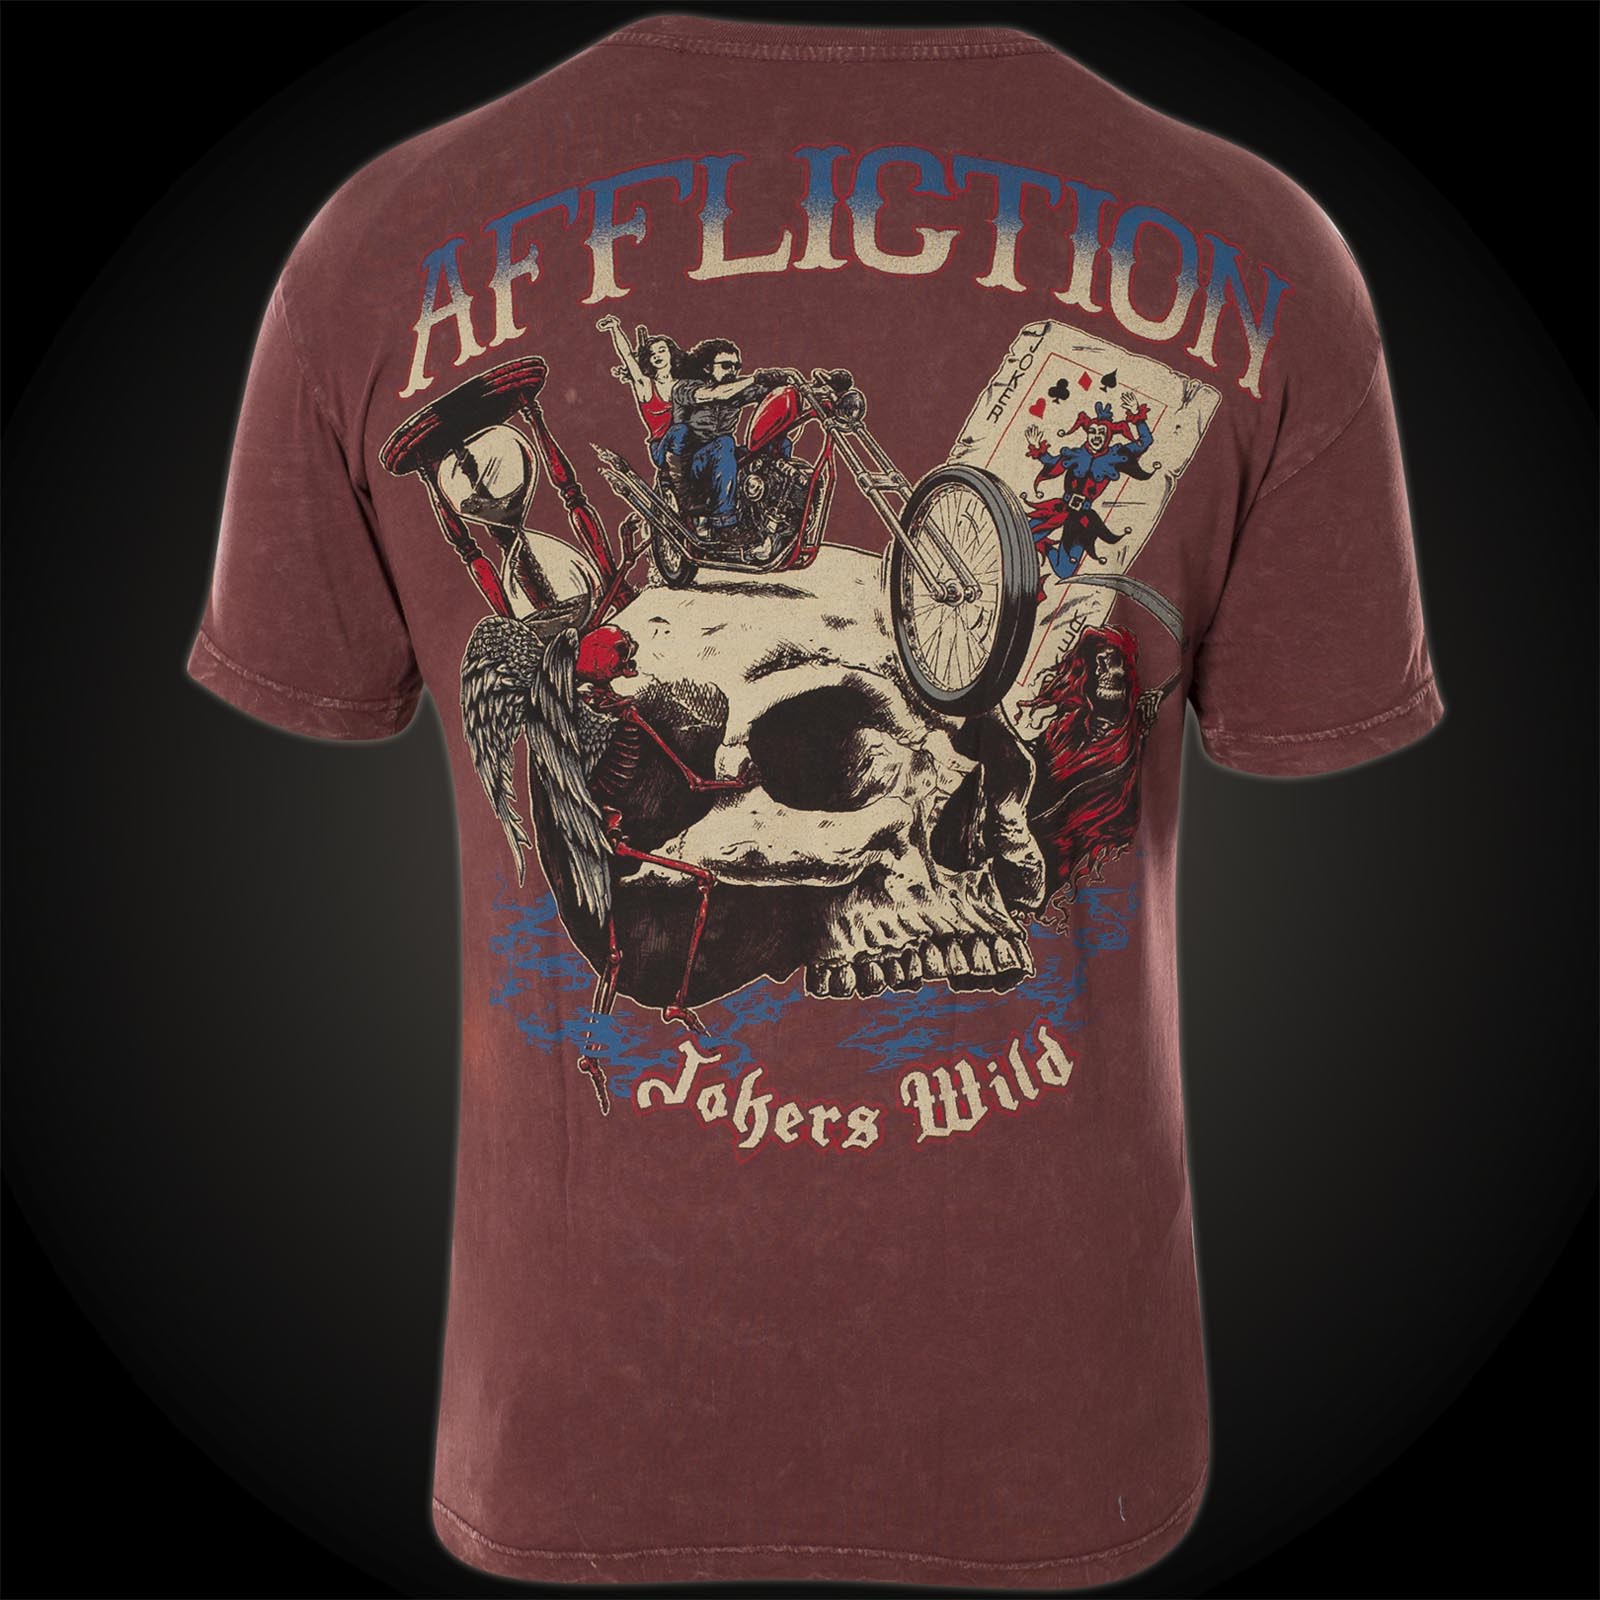 Affliction Jokers Wild Print featuring a biker, Joker and hourglass